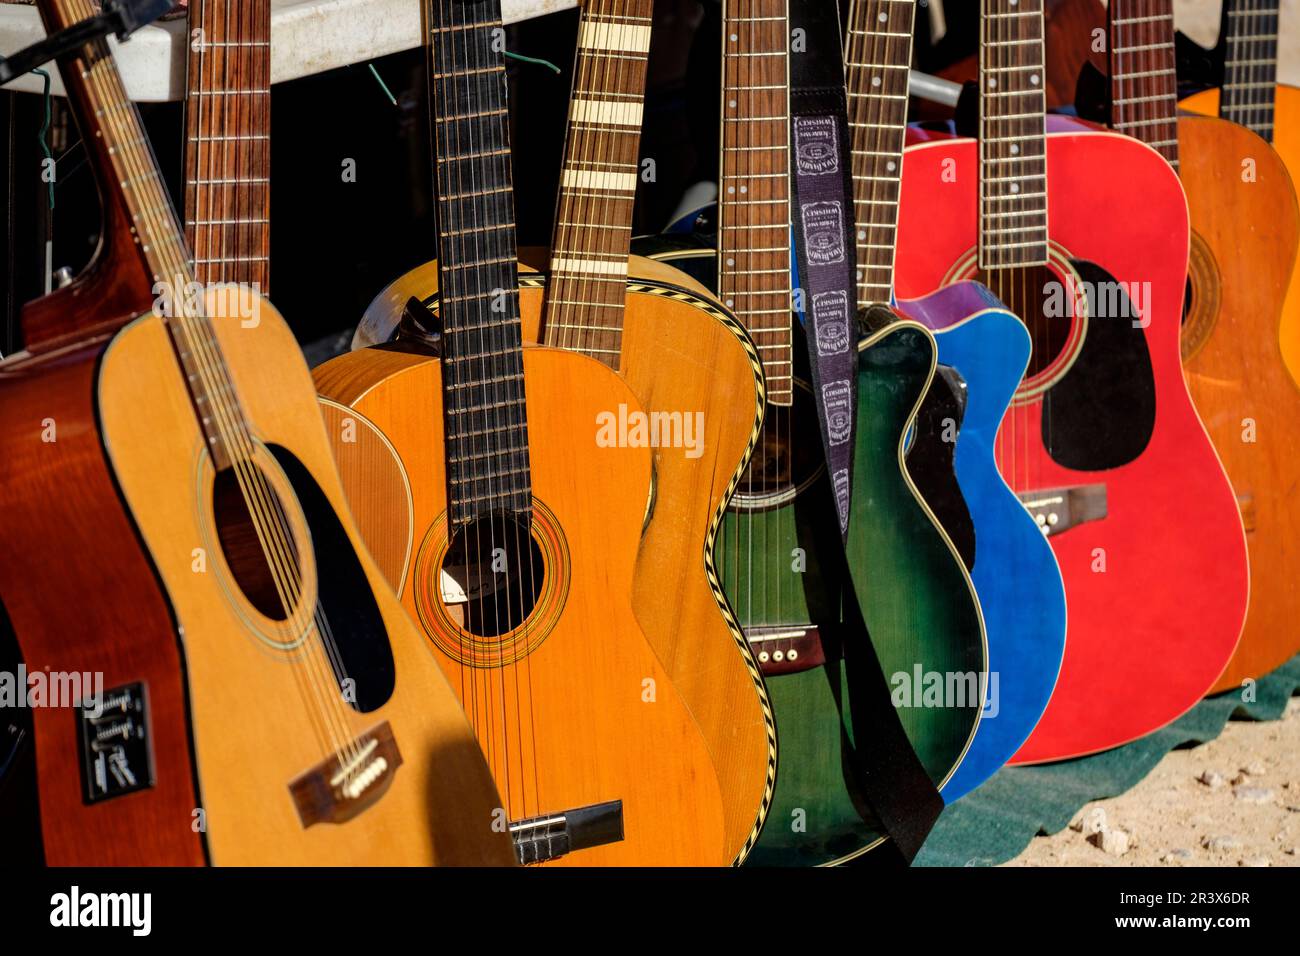 guitarras, Mercado de antigüedades y de segunda mano de Son Bugadelles, Calvià, Mallorca, balearic islands, Spain. Stock Photo